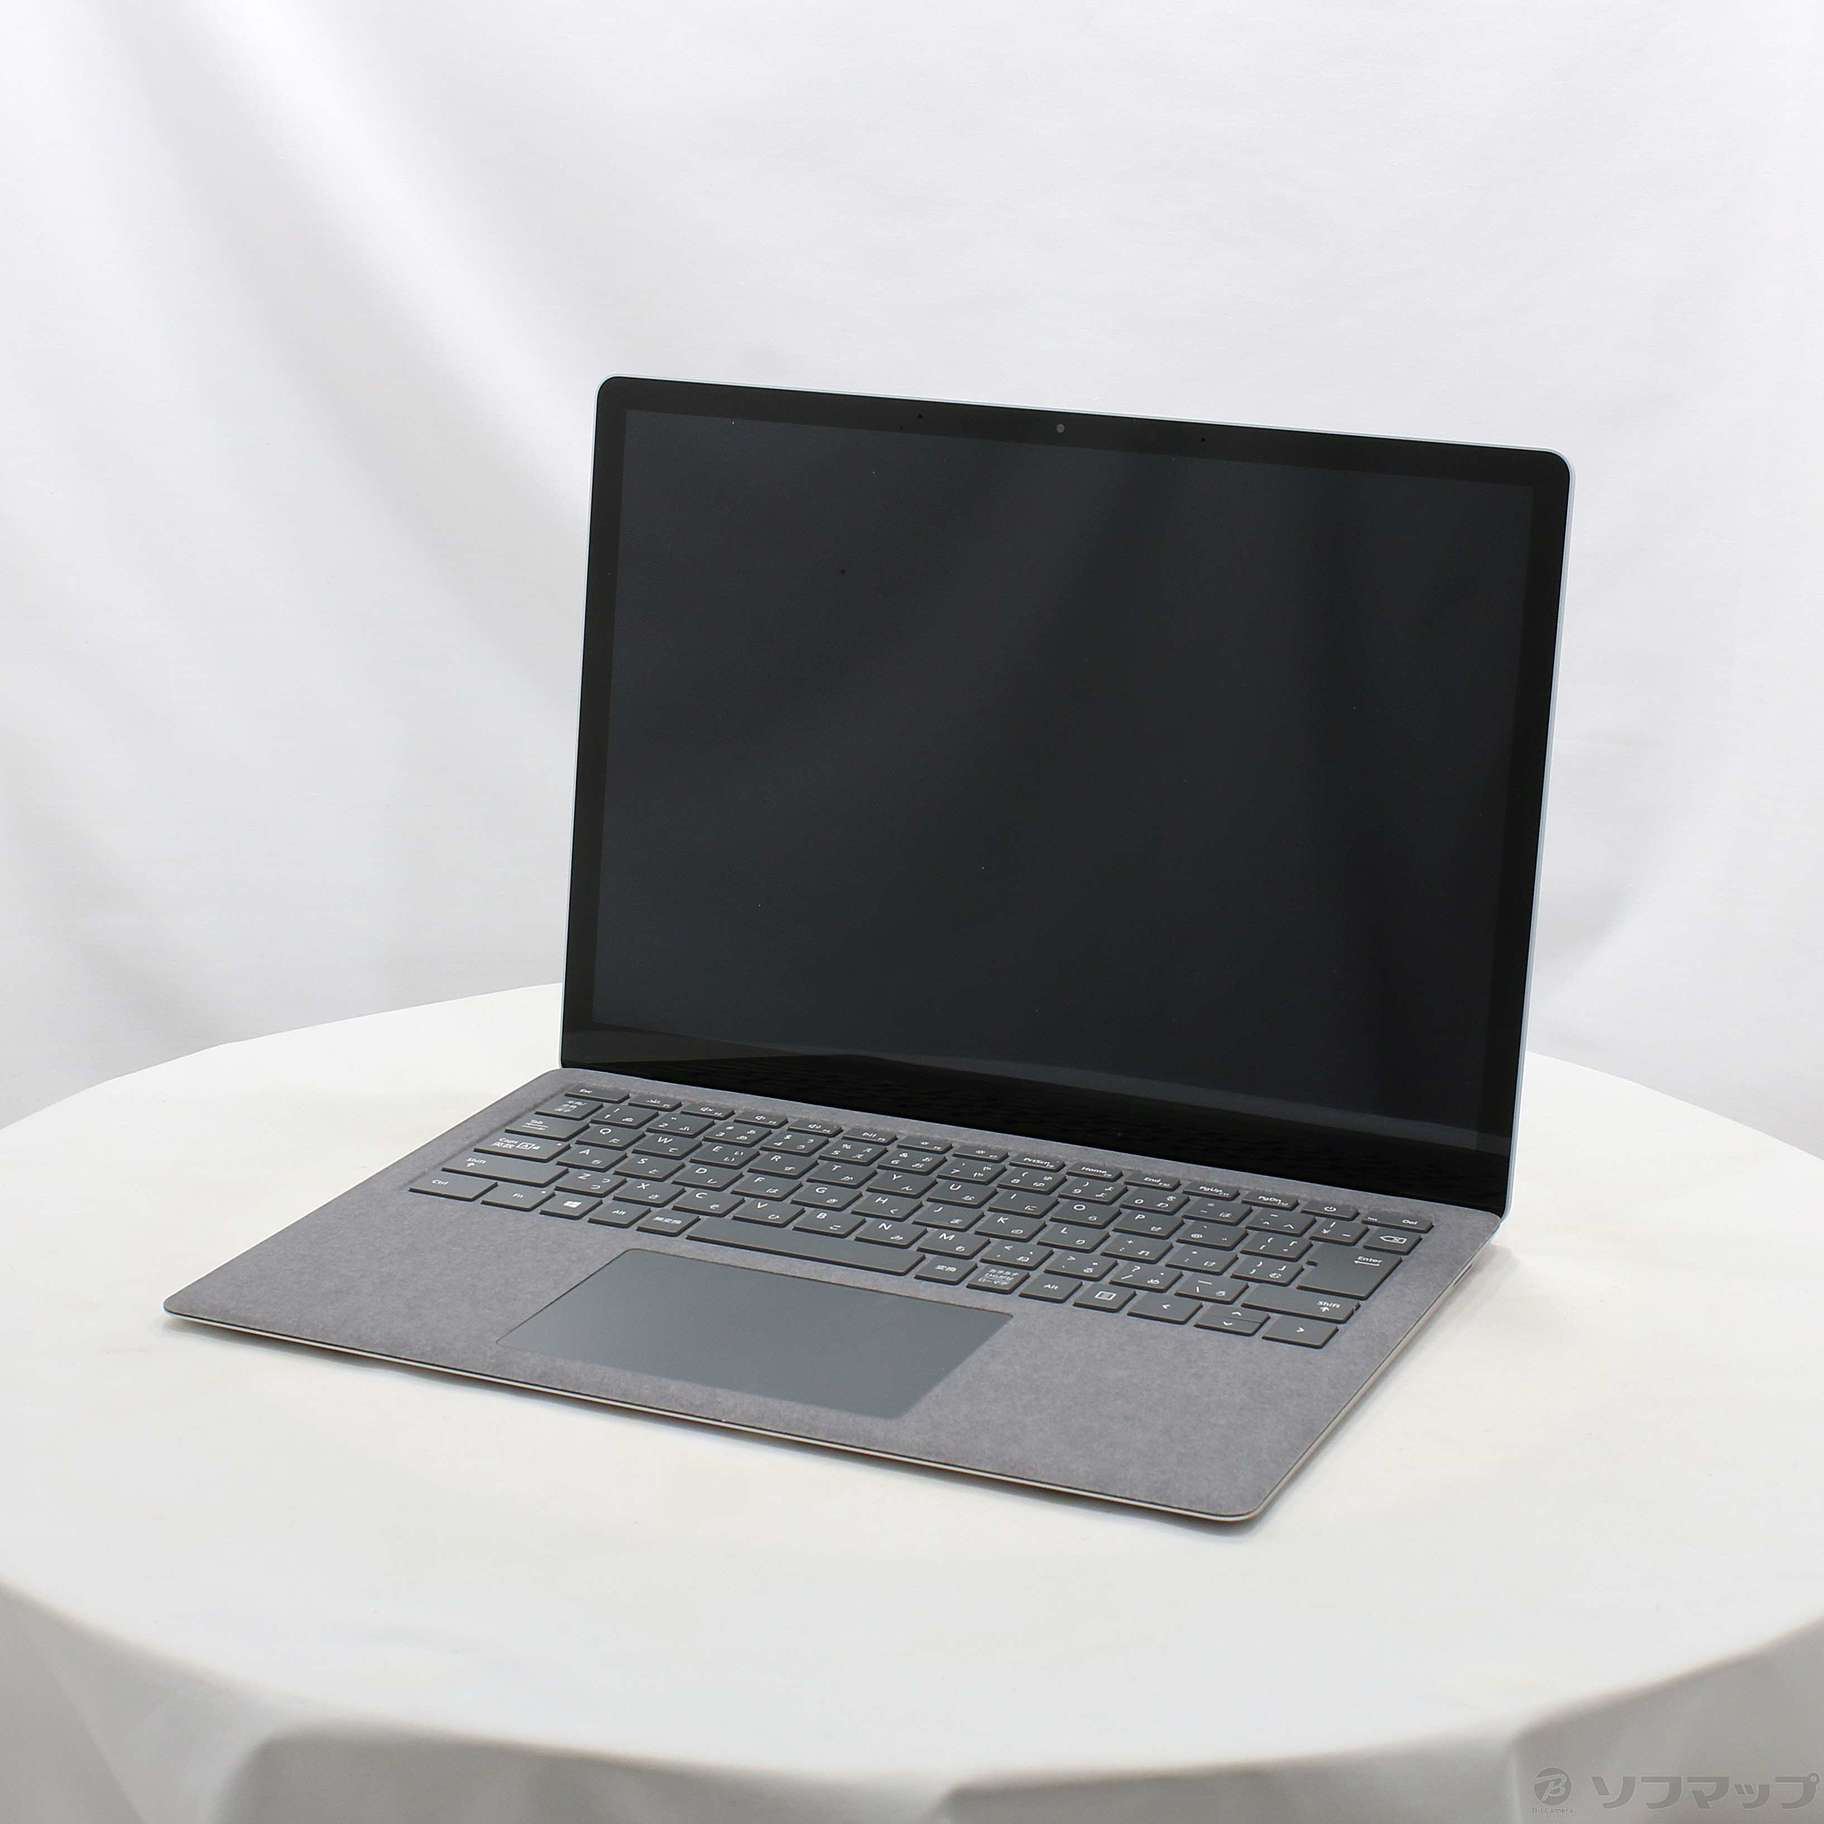 ☆Microsoft Surface Laptop3 VGY-00018 ①